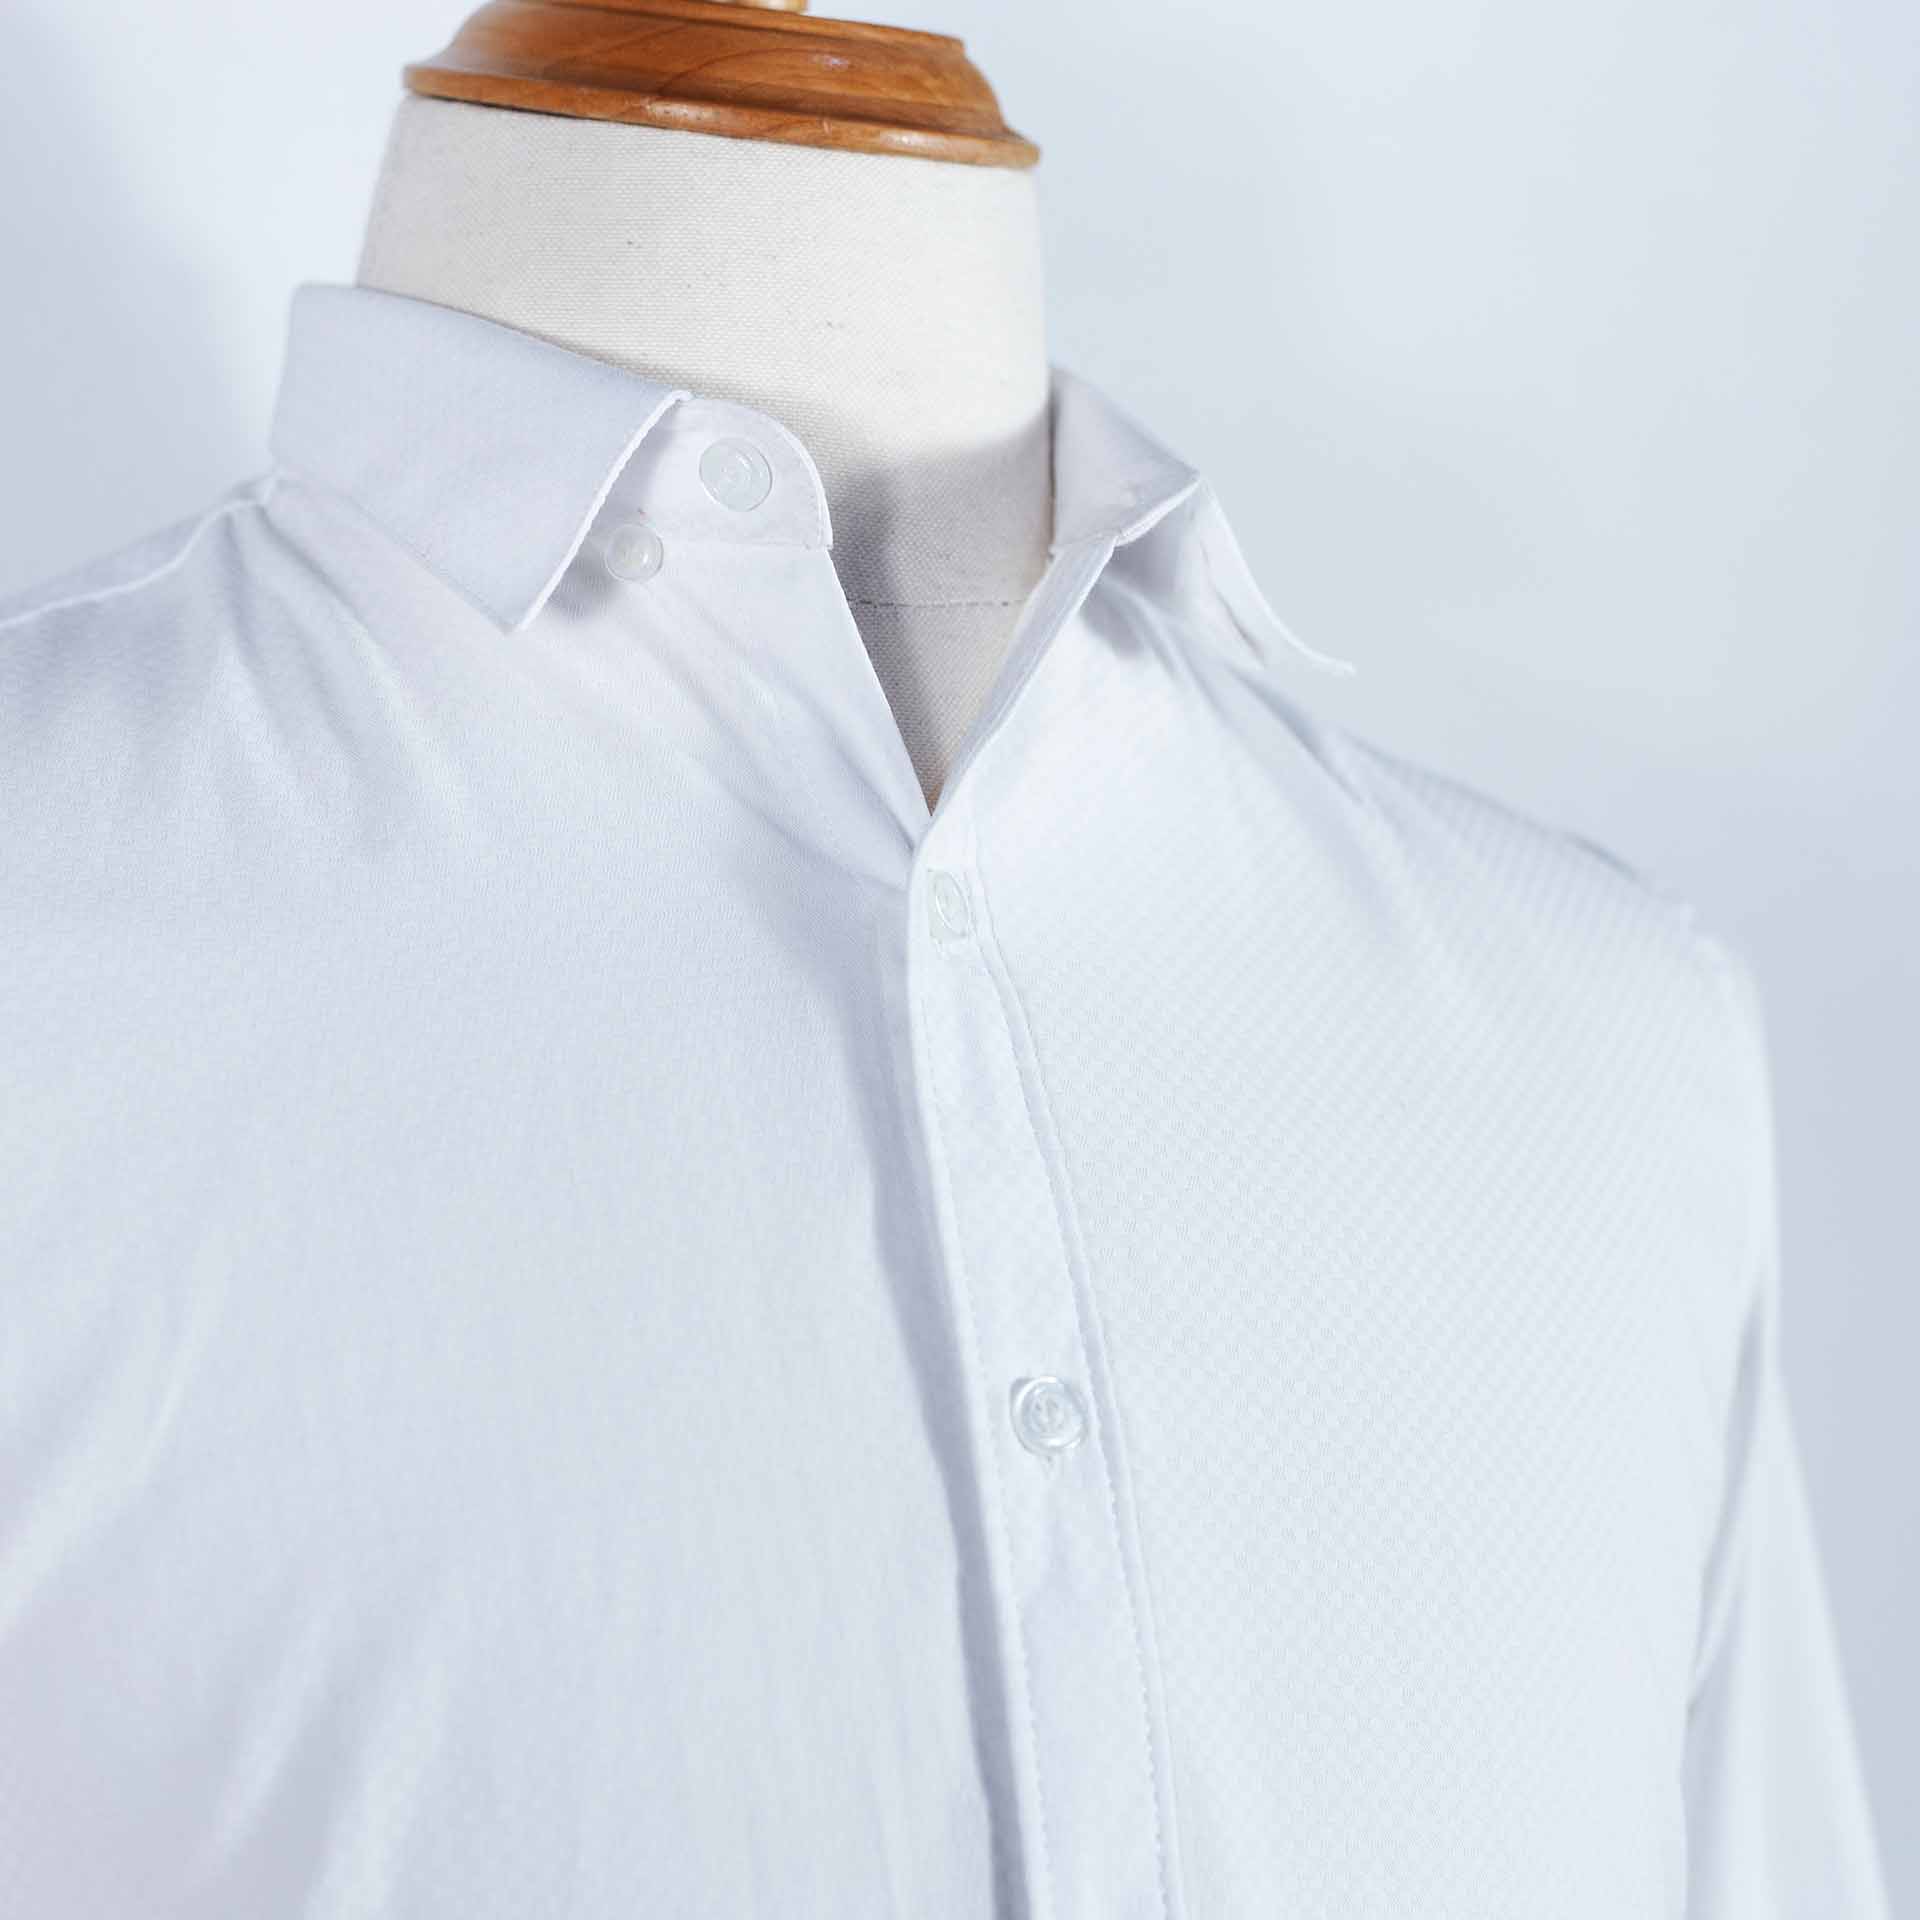 Áo Premium Fabric Veined White Shirt